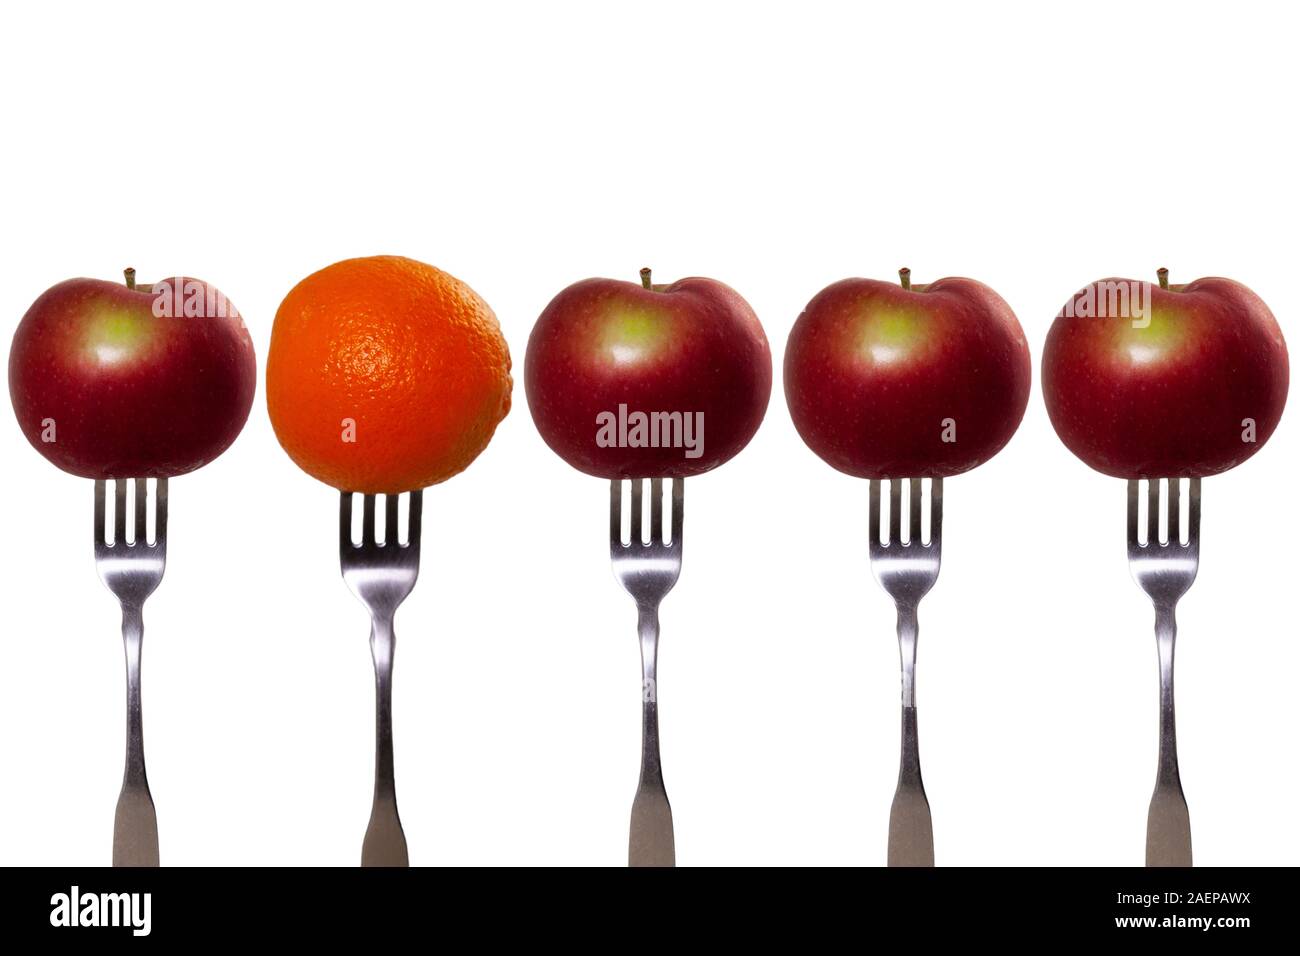 Äpfel und eine Orange auf der Gabel. Äpfel mit Birnen vergleichen. Stockfoto